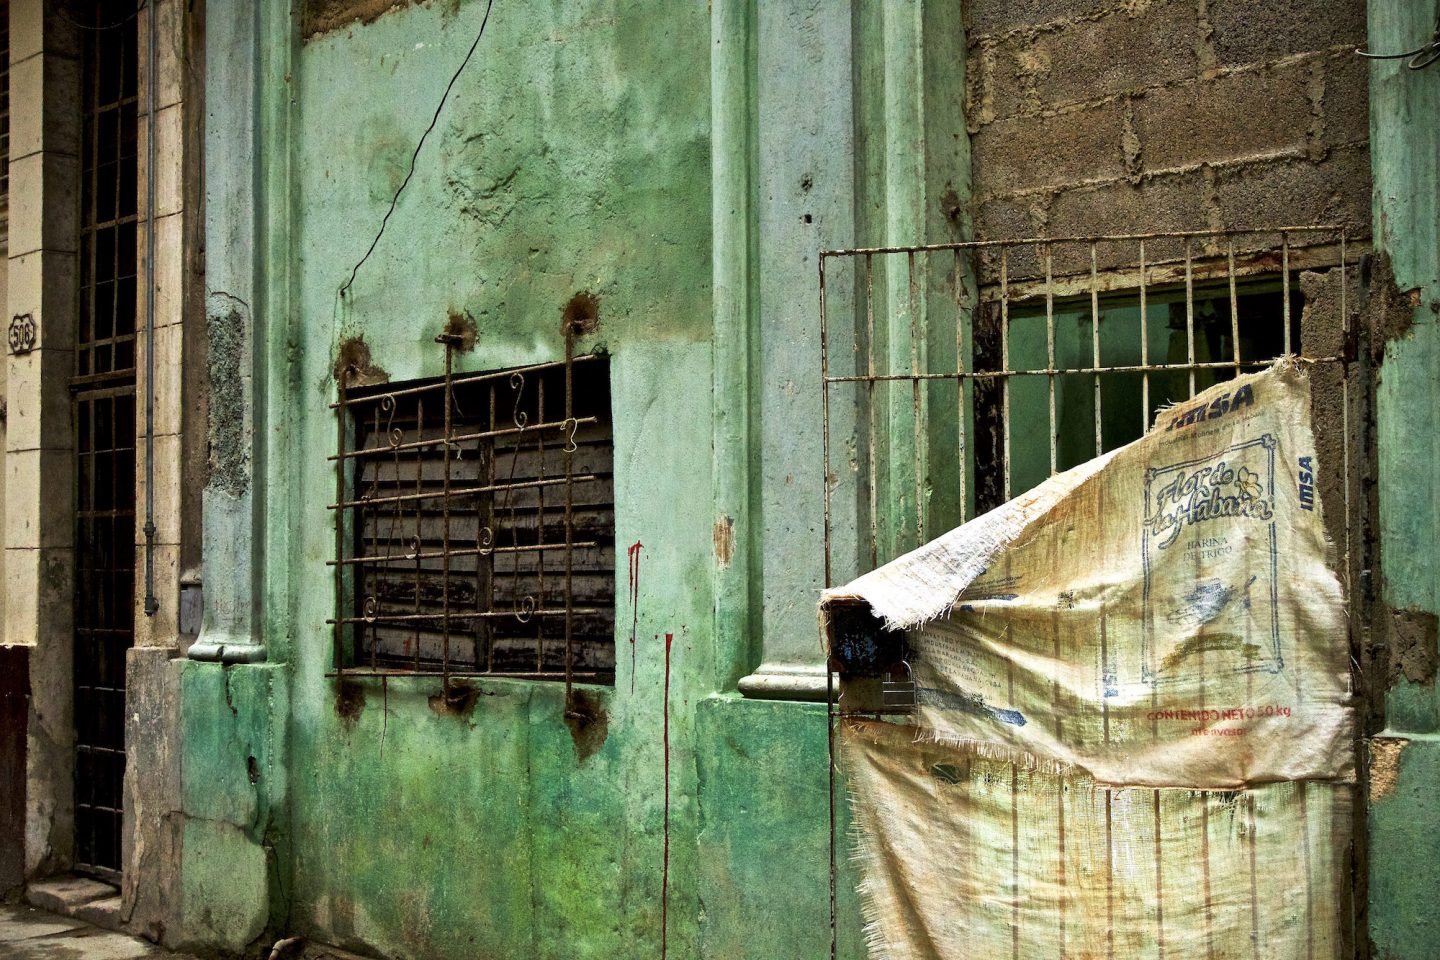 Makeshift door in Havana. Daily life in Cuba.